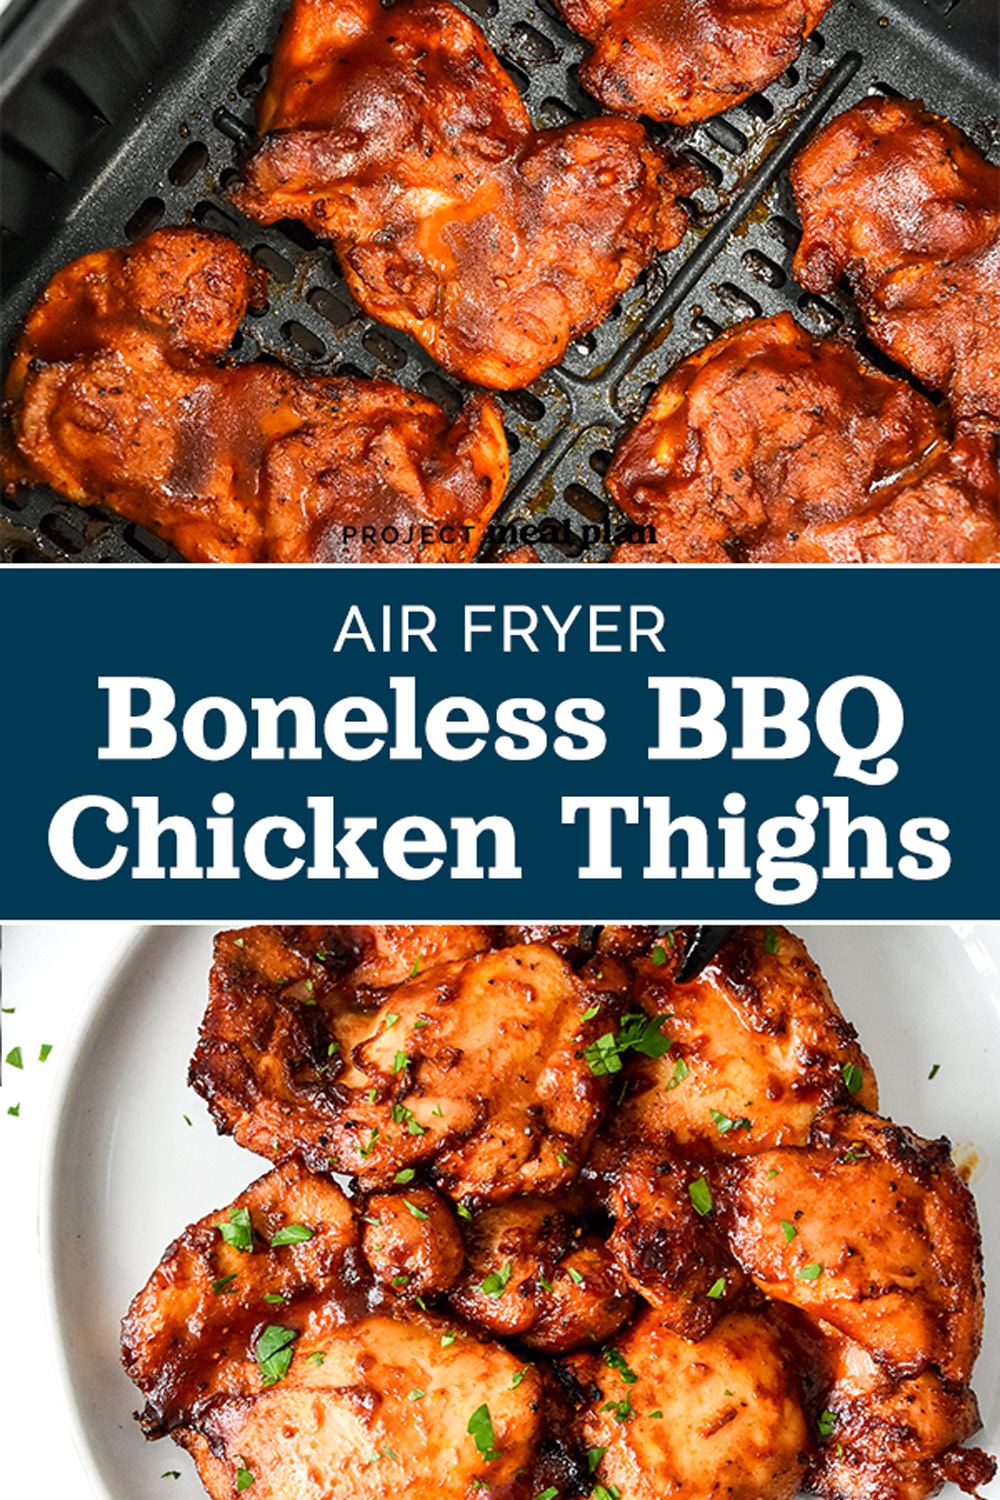 Air Fryer Boneless BBQ Chicken Thighs - Project Meal Plan